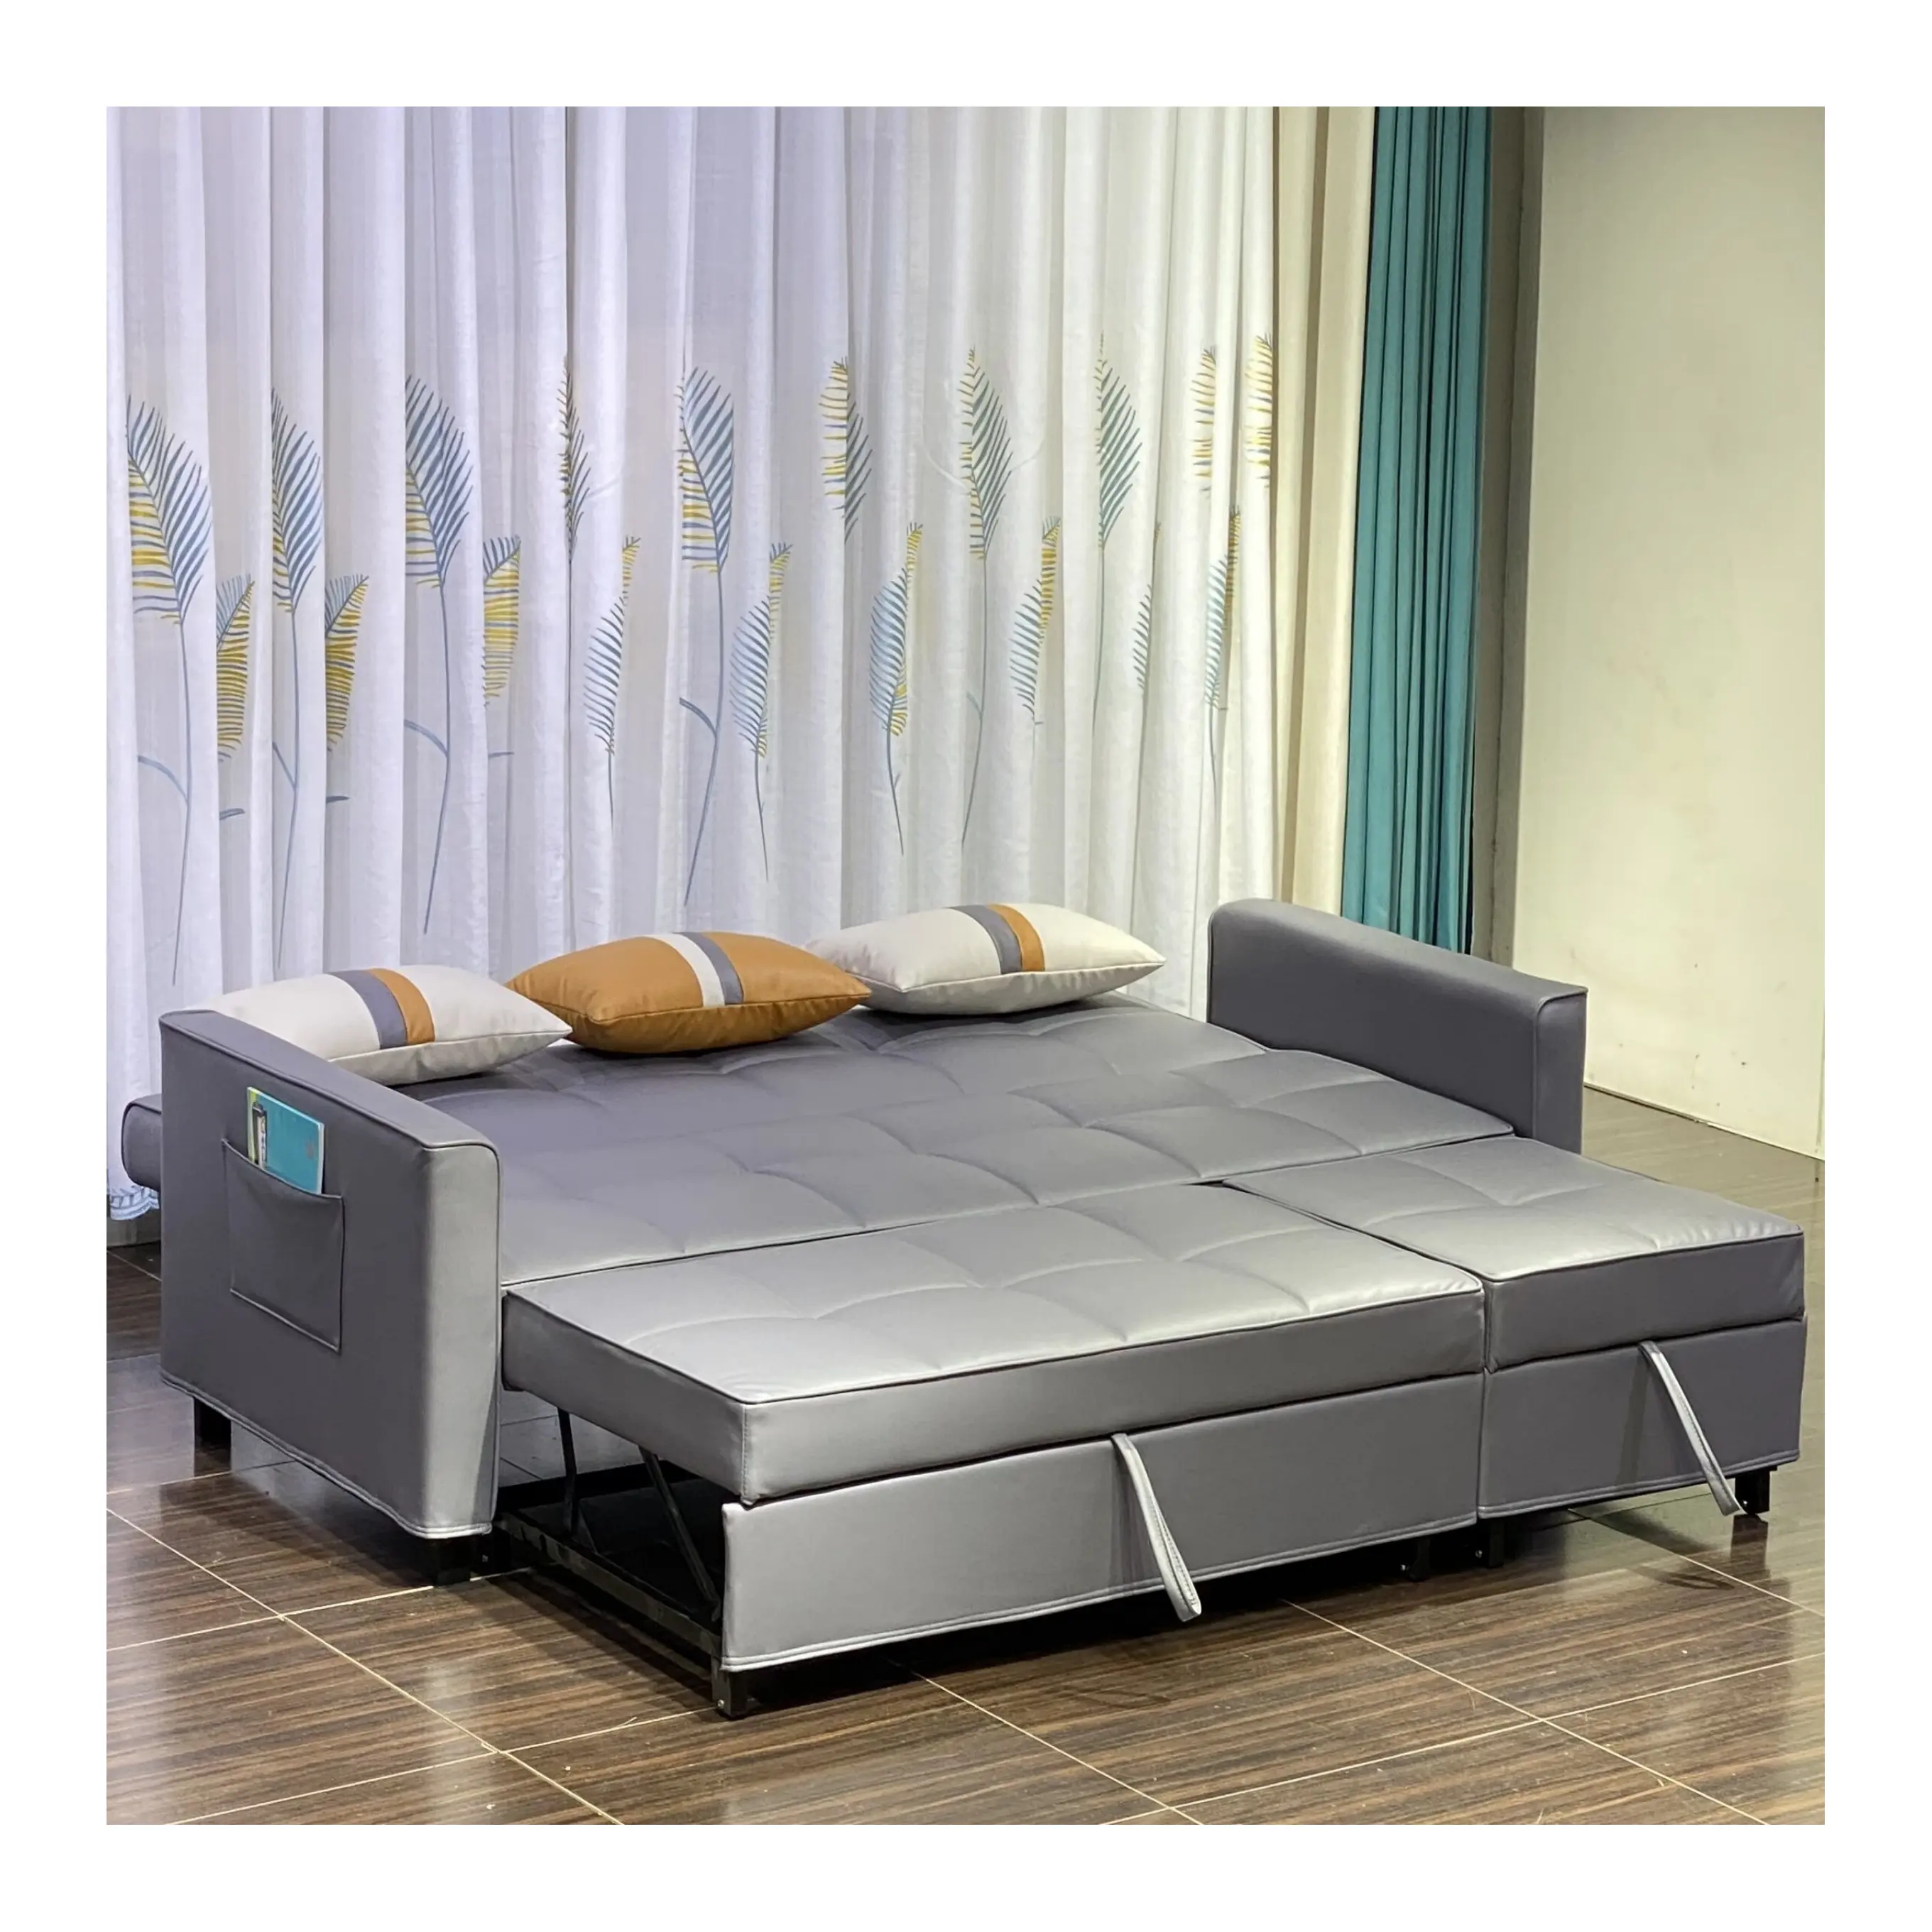 Распределитель по цене производителя, раскладной диван-кровать размера «king-size», диван для гостиной